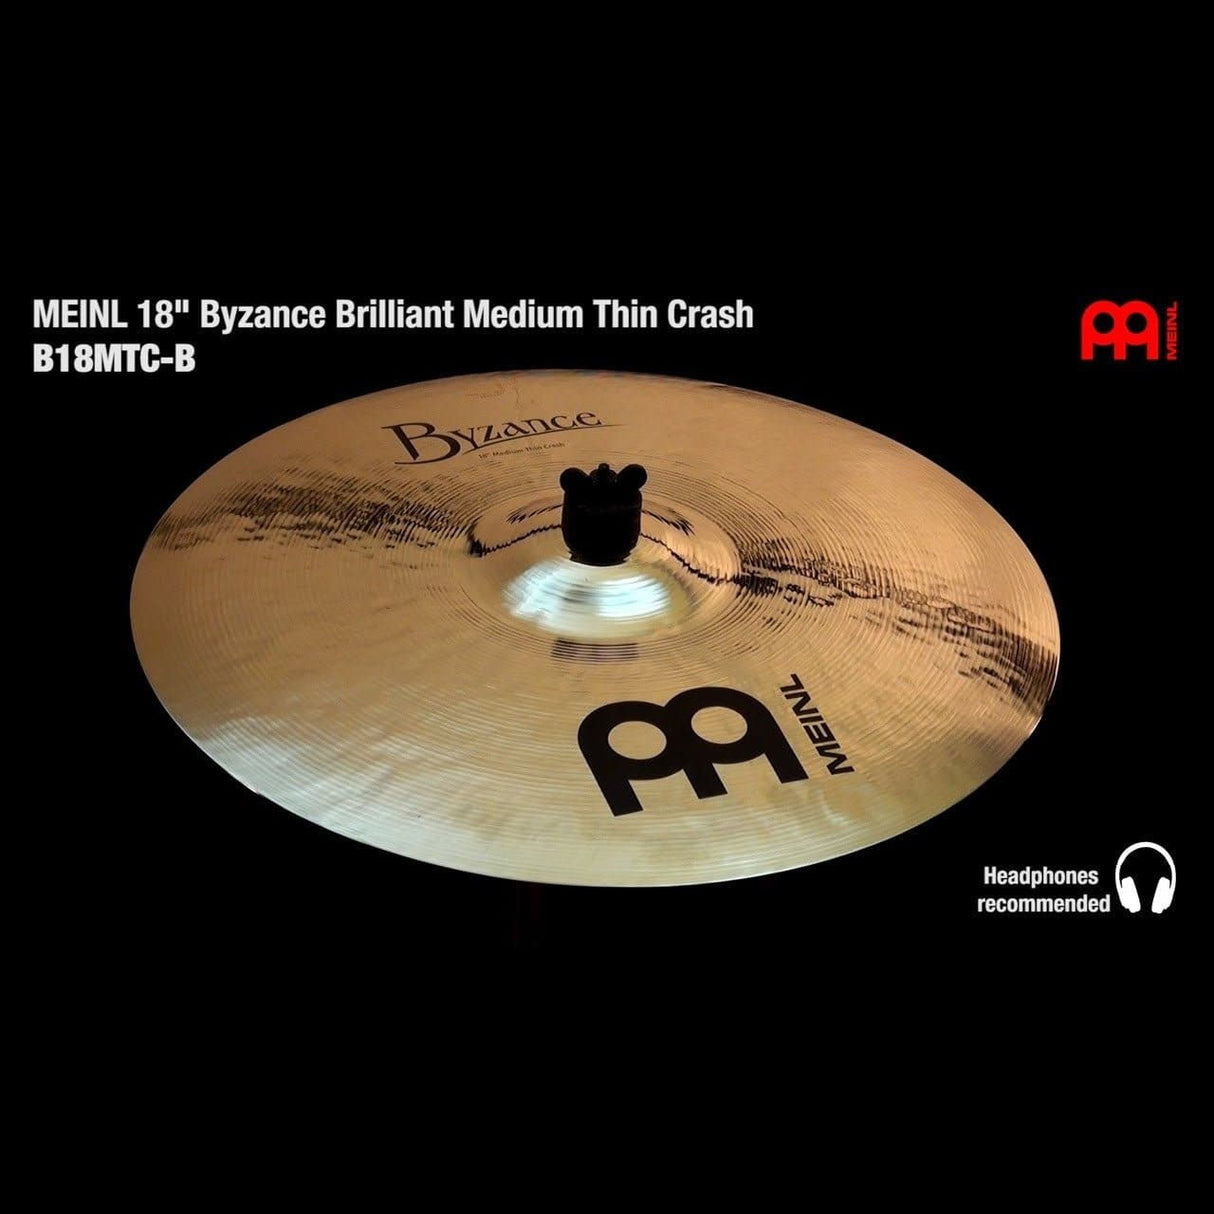 Meinl Byzance Brilliant Medium Thin Crash Cymbal 18